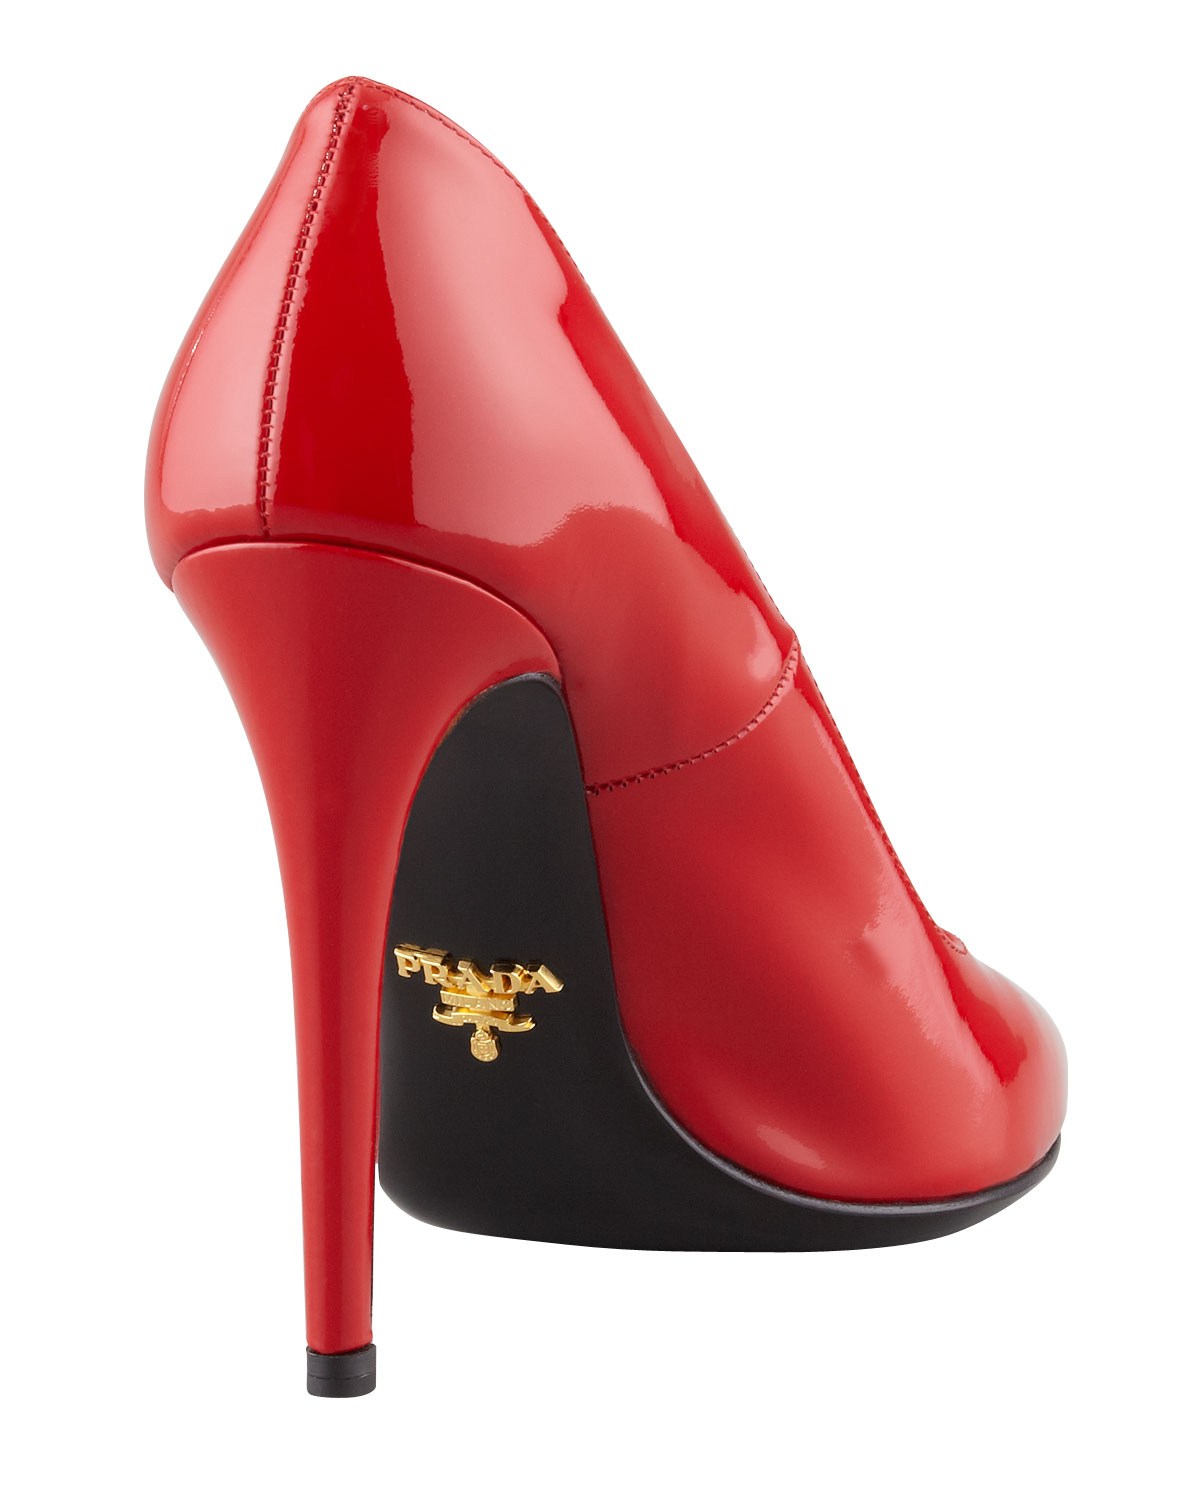 prada red heels